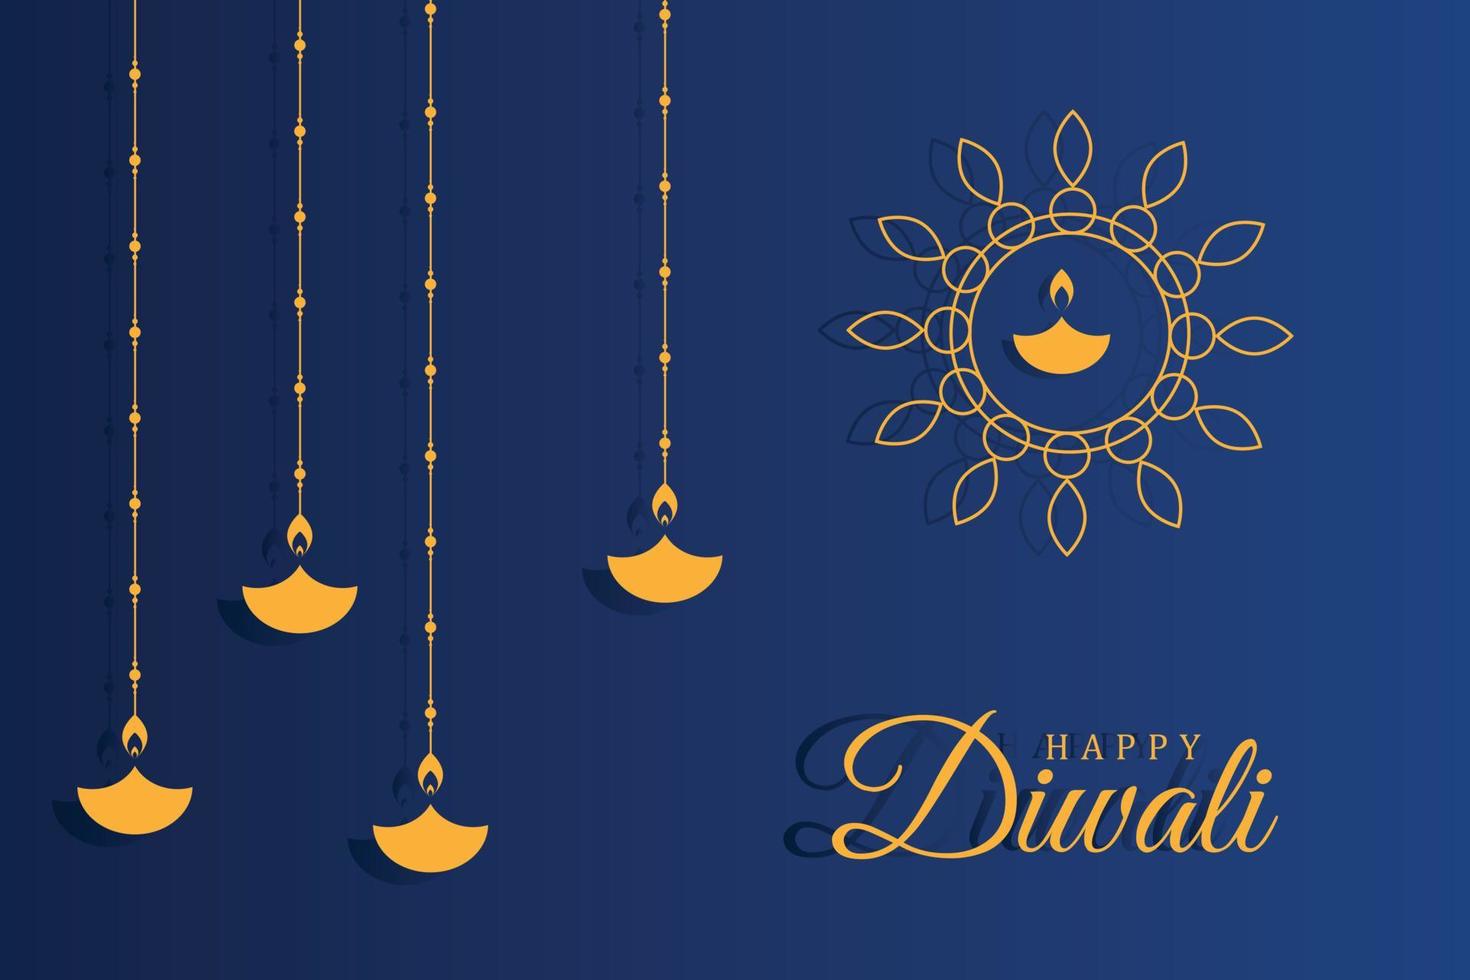 glücklicher Diwali-Hintergrund vektor